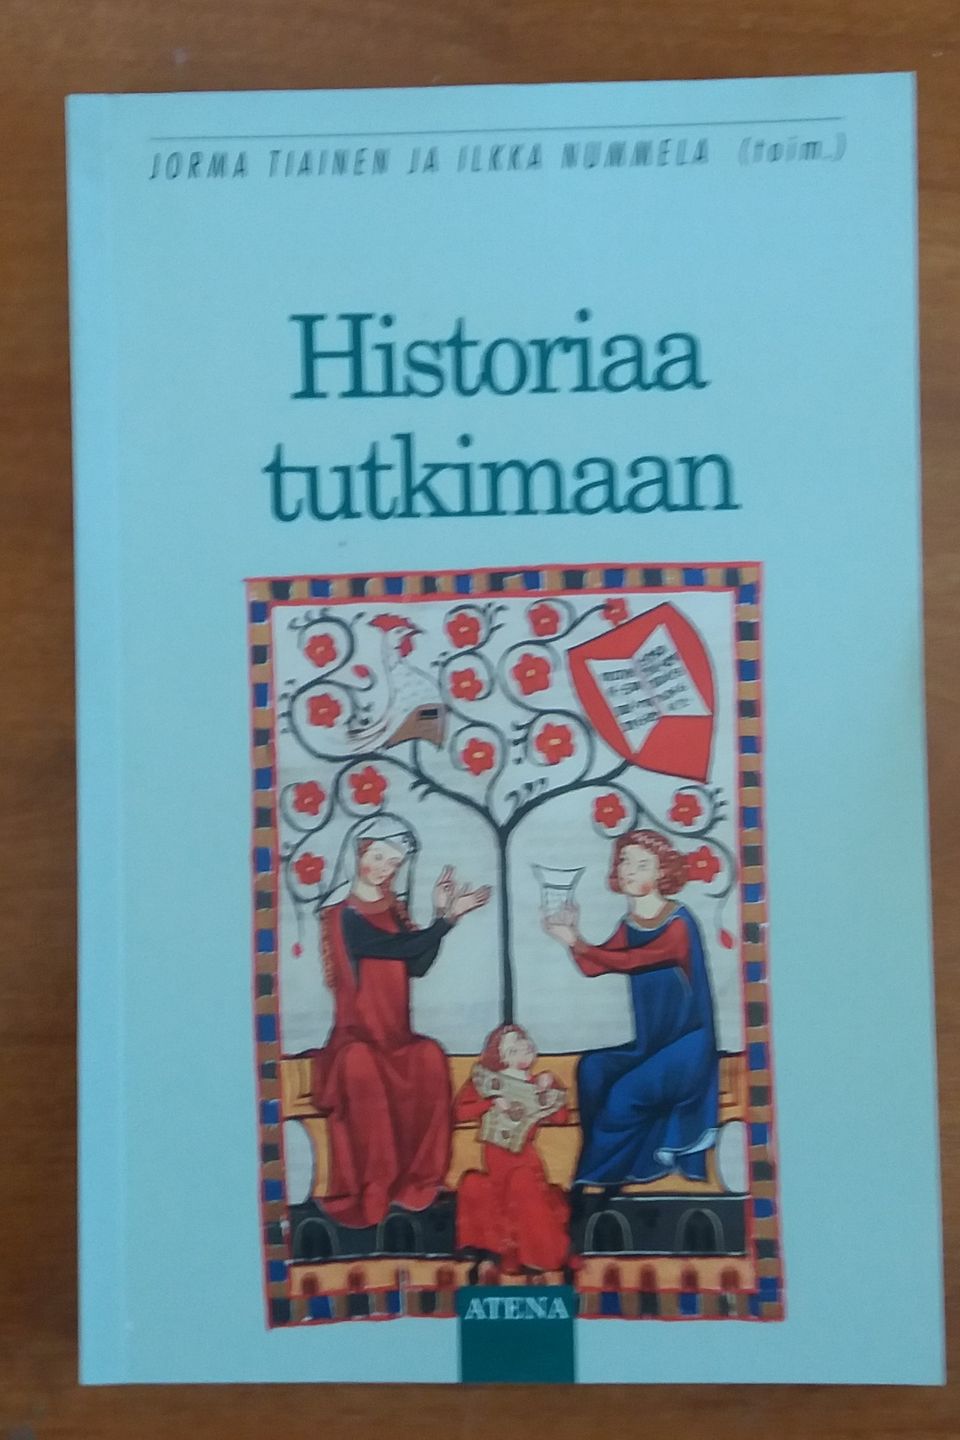 Jorma Tiainen, Ilkka Nummela toim. HISTORIAA TUTKIMAAN Atena 2p 1999